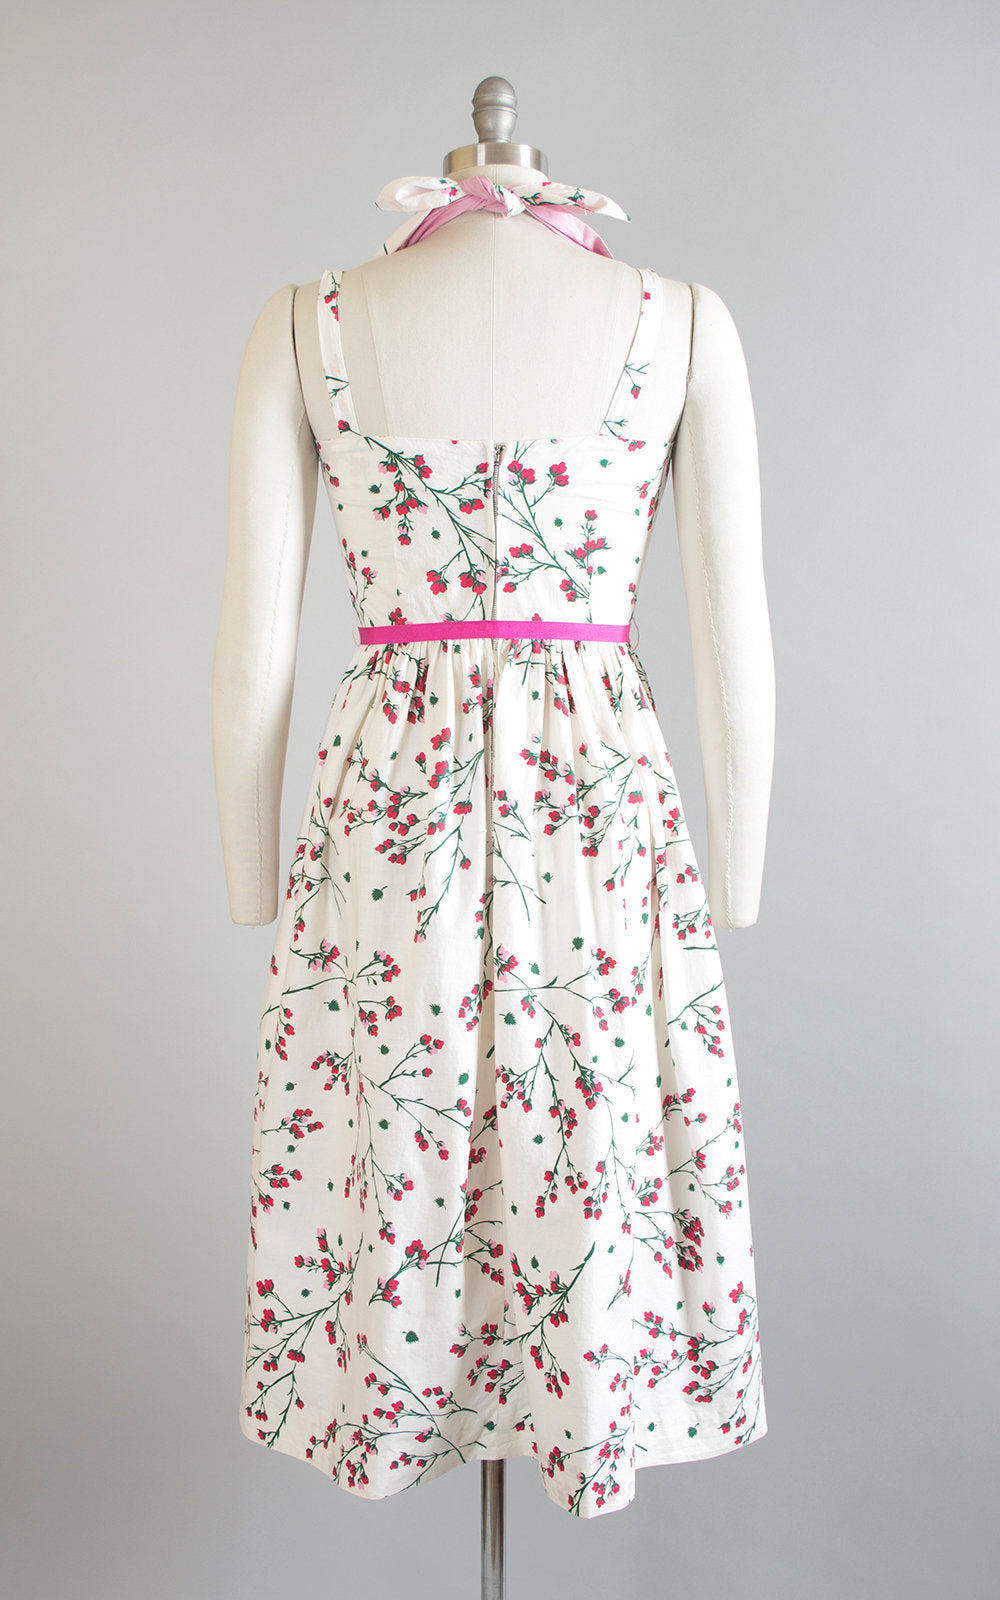 Vintage 1950s Dress | 50s Cherry Blossom Floral Print Cotton Sundress Criss Cross Halter White Pink Full Skirt Day Dress (small)